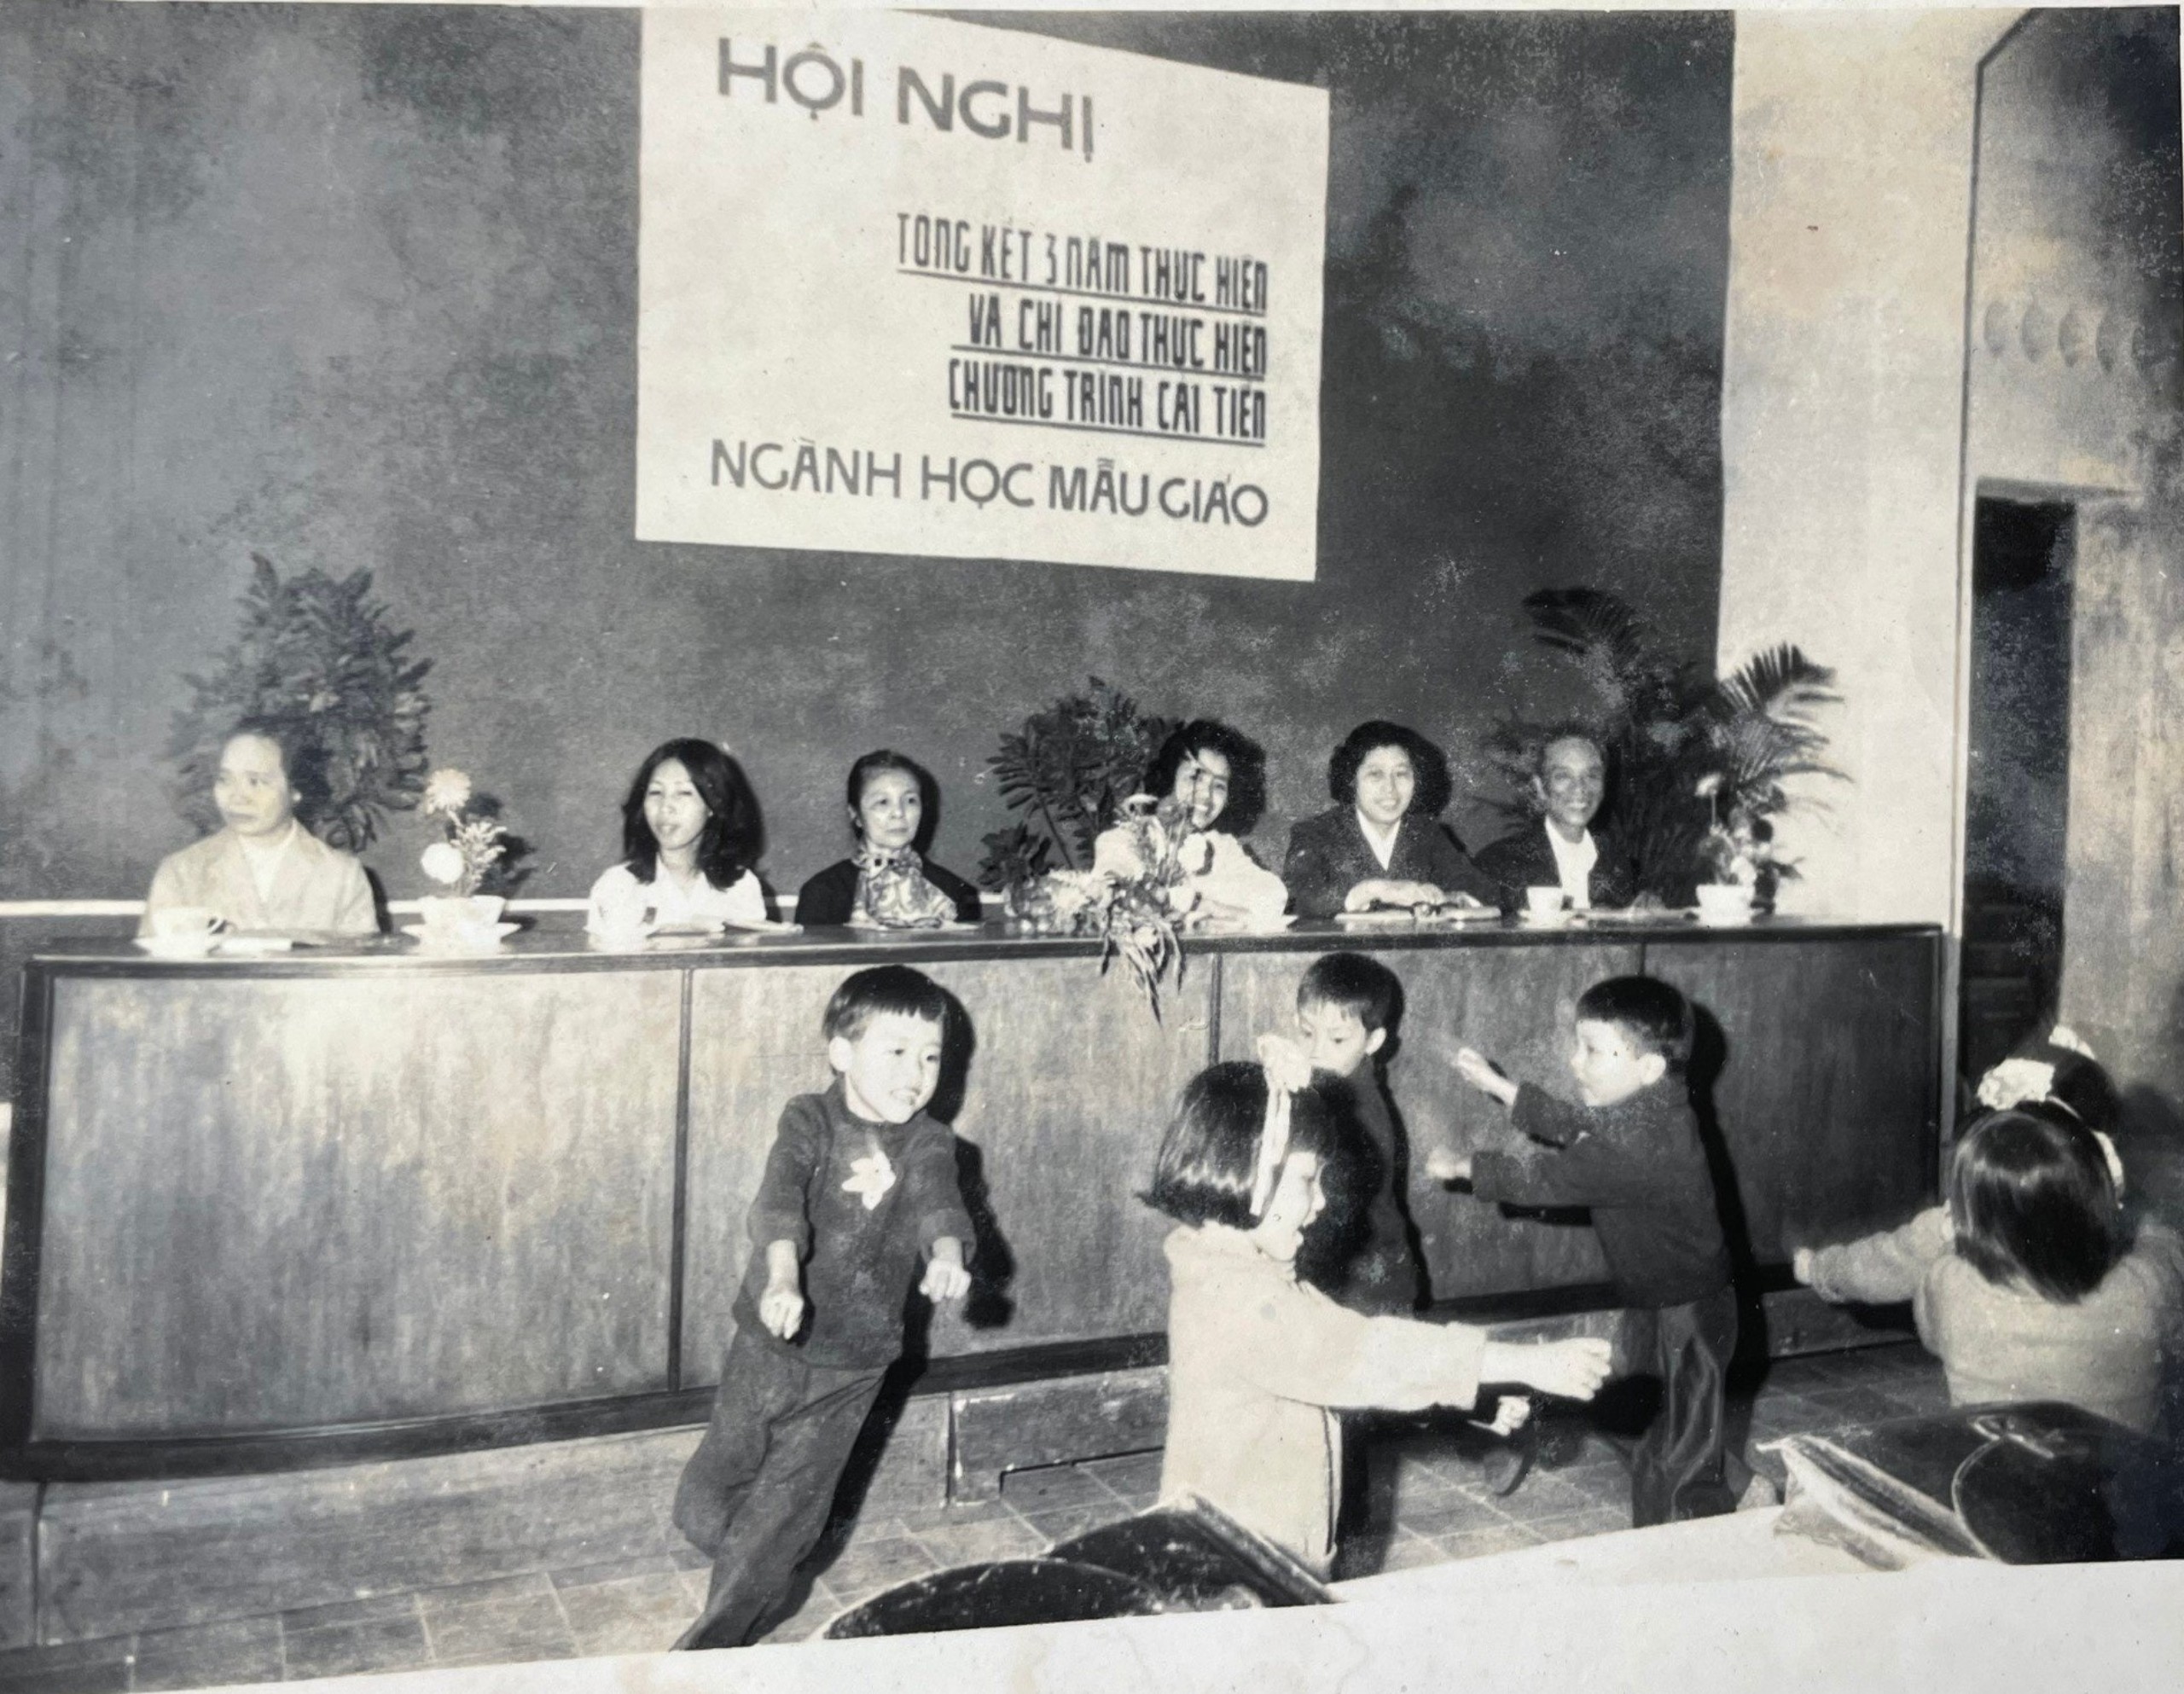 Hội nghị của ngành Mẫu giáo tại Thủ đô Hà Nội năm 1962 (người thứ 3 từ trái sang là bà Trần Thị Tính). Ảnh: Tư liệu